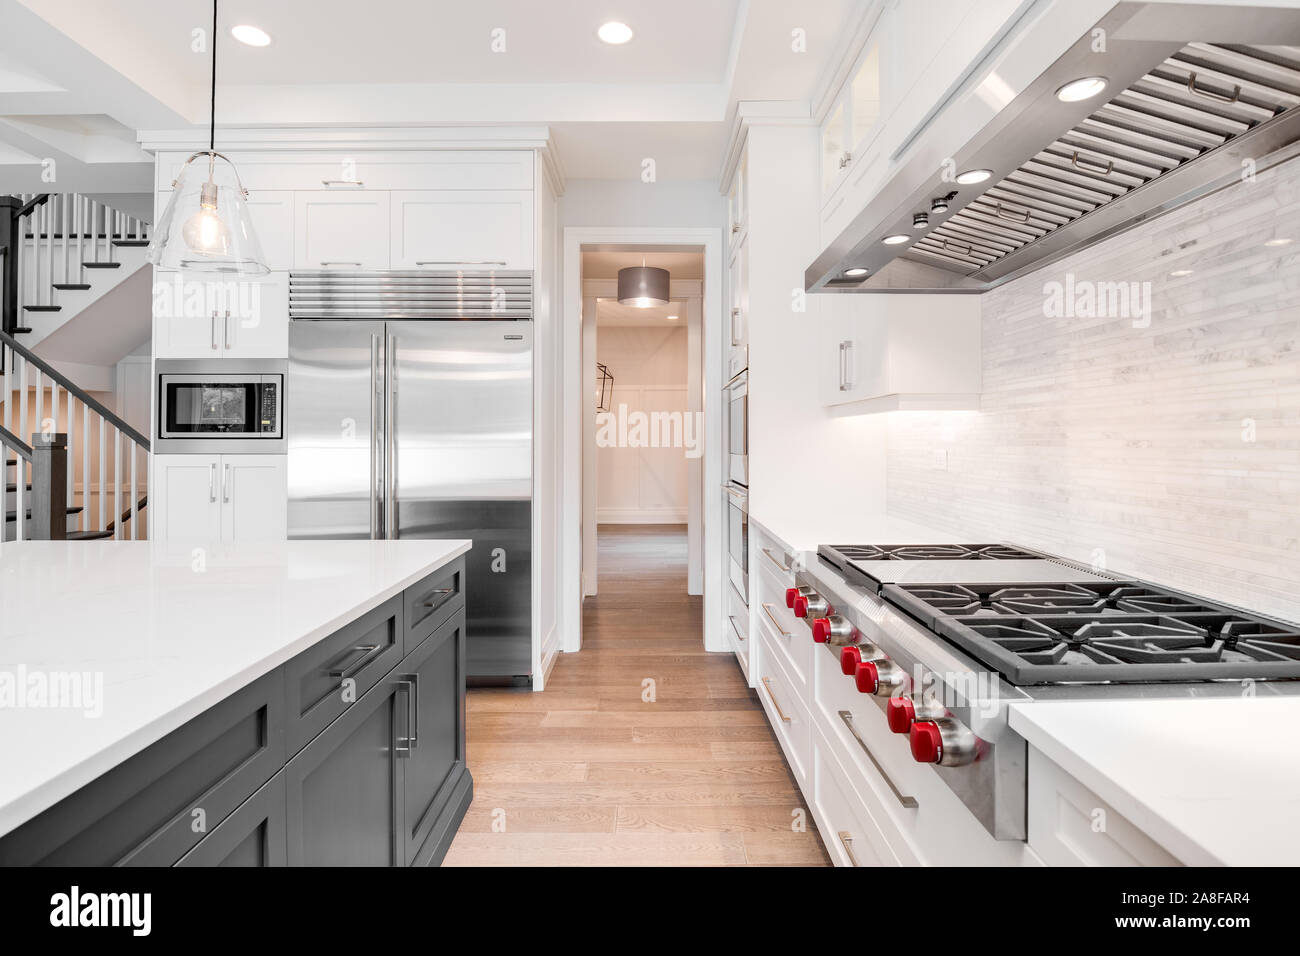 Une luxueuse cuisine moderne avec des appareils en acier inoxydable loup blanc entouré de belles armoires, granite et planchers de bois. Banque D'Images